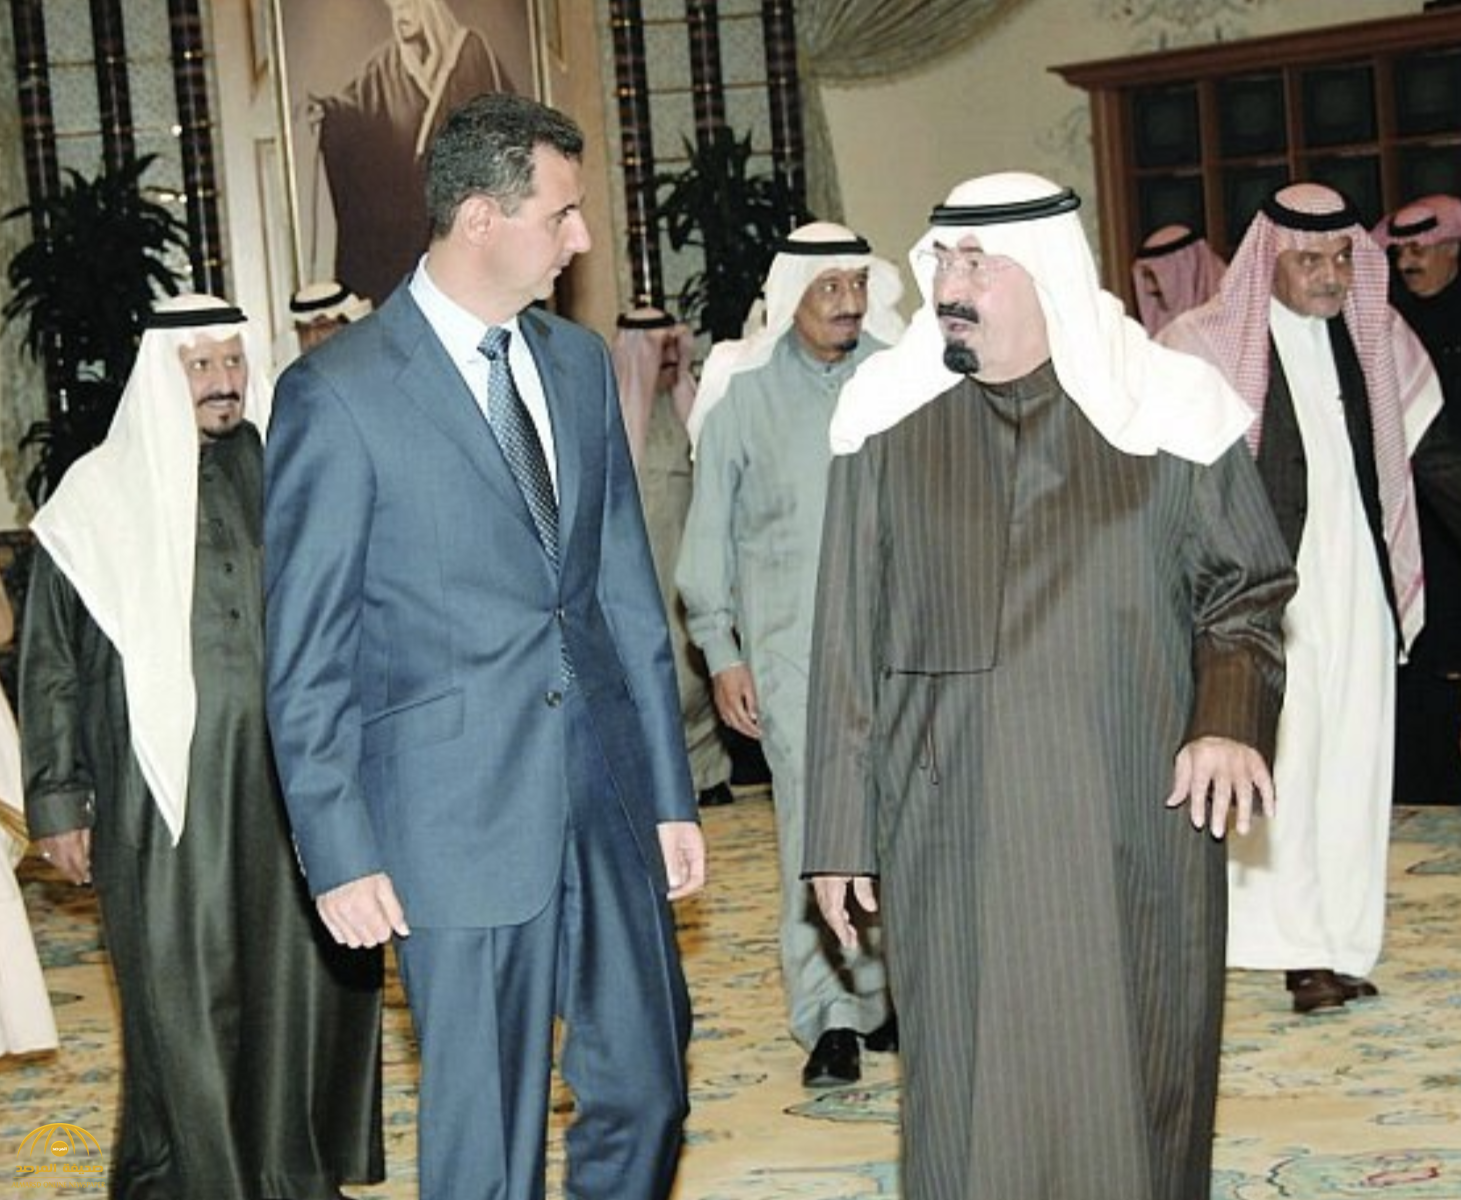 بندر بن سلطان: الملك عبدالله استدعى بشار الأسد في الرياض بعد مقتل الحريري وقال له "أنت كذاب" 3 مرات